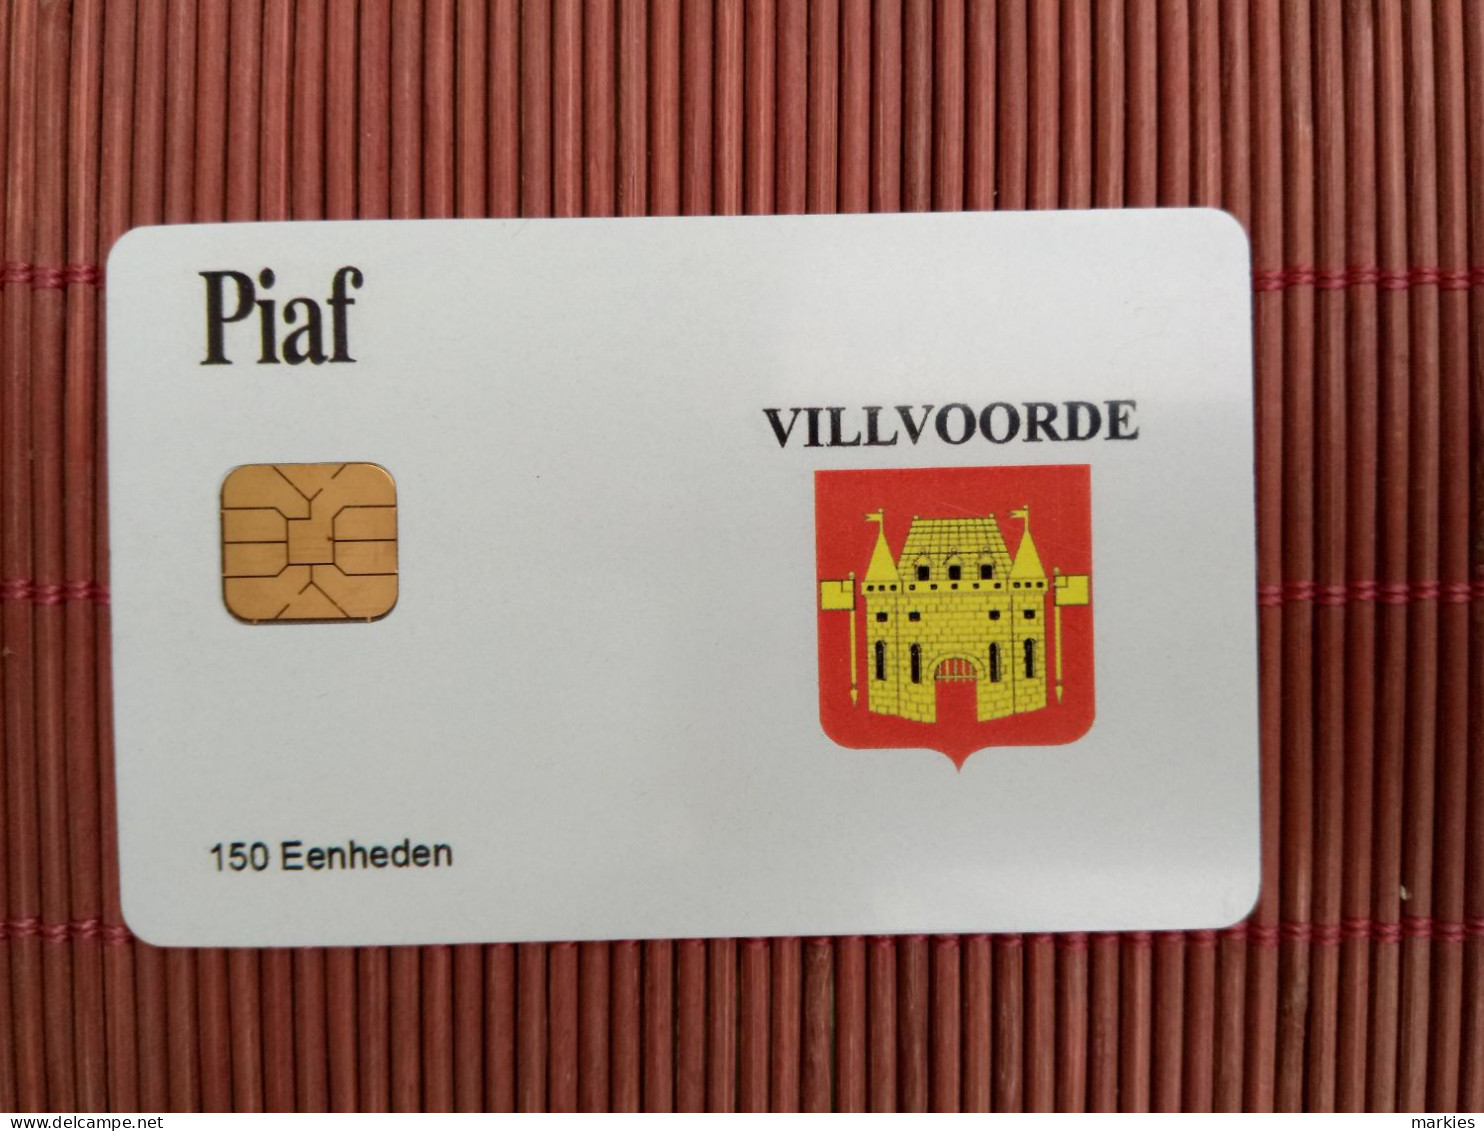 Carte Piaf  Villvoorde Ony 500 Ex Made 2 Photos Used Rare - Cartes De Stationnement, PIAF